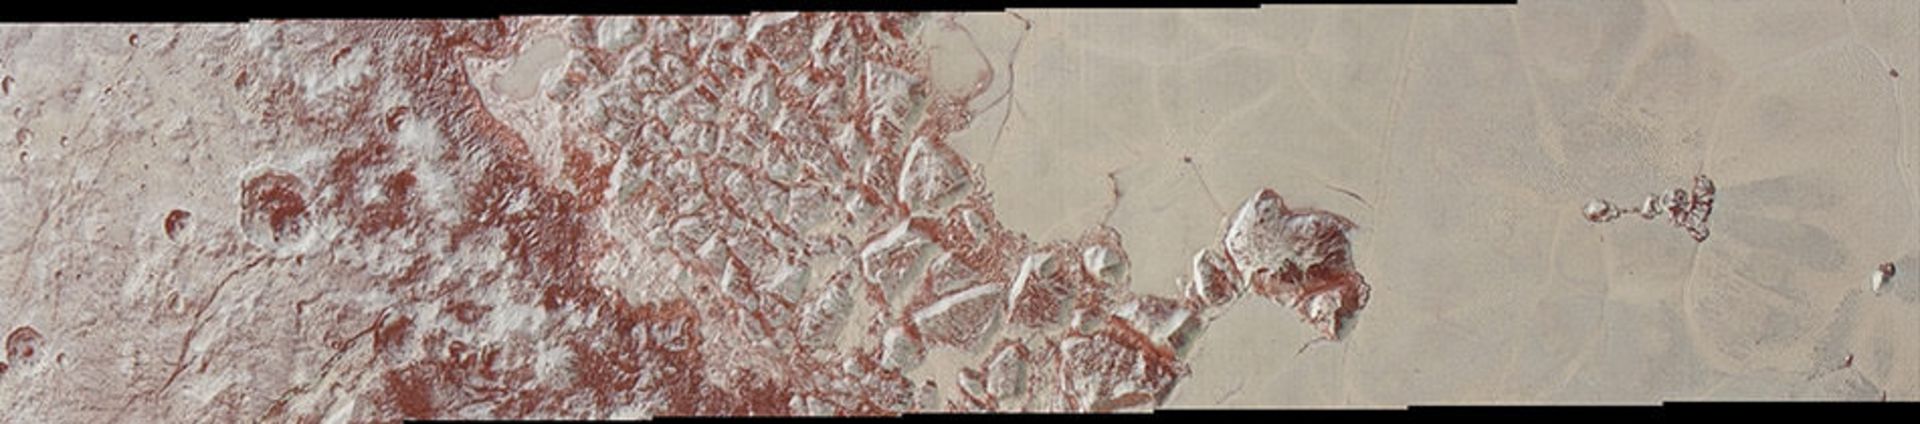 حاشیه فلات اسپوتنیک در پلوتو